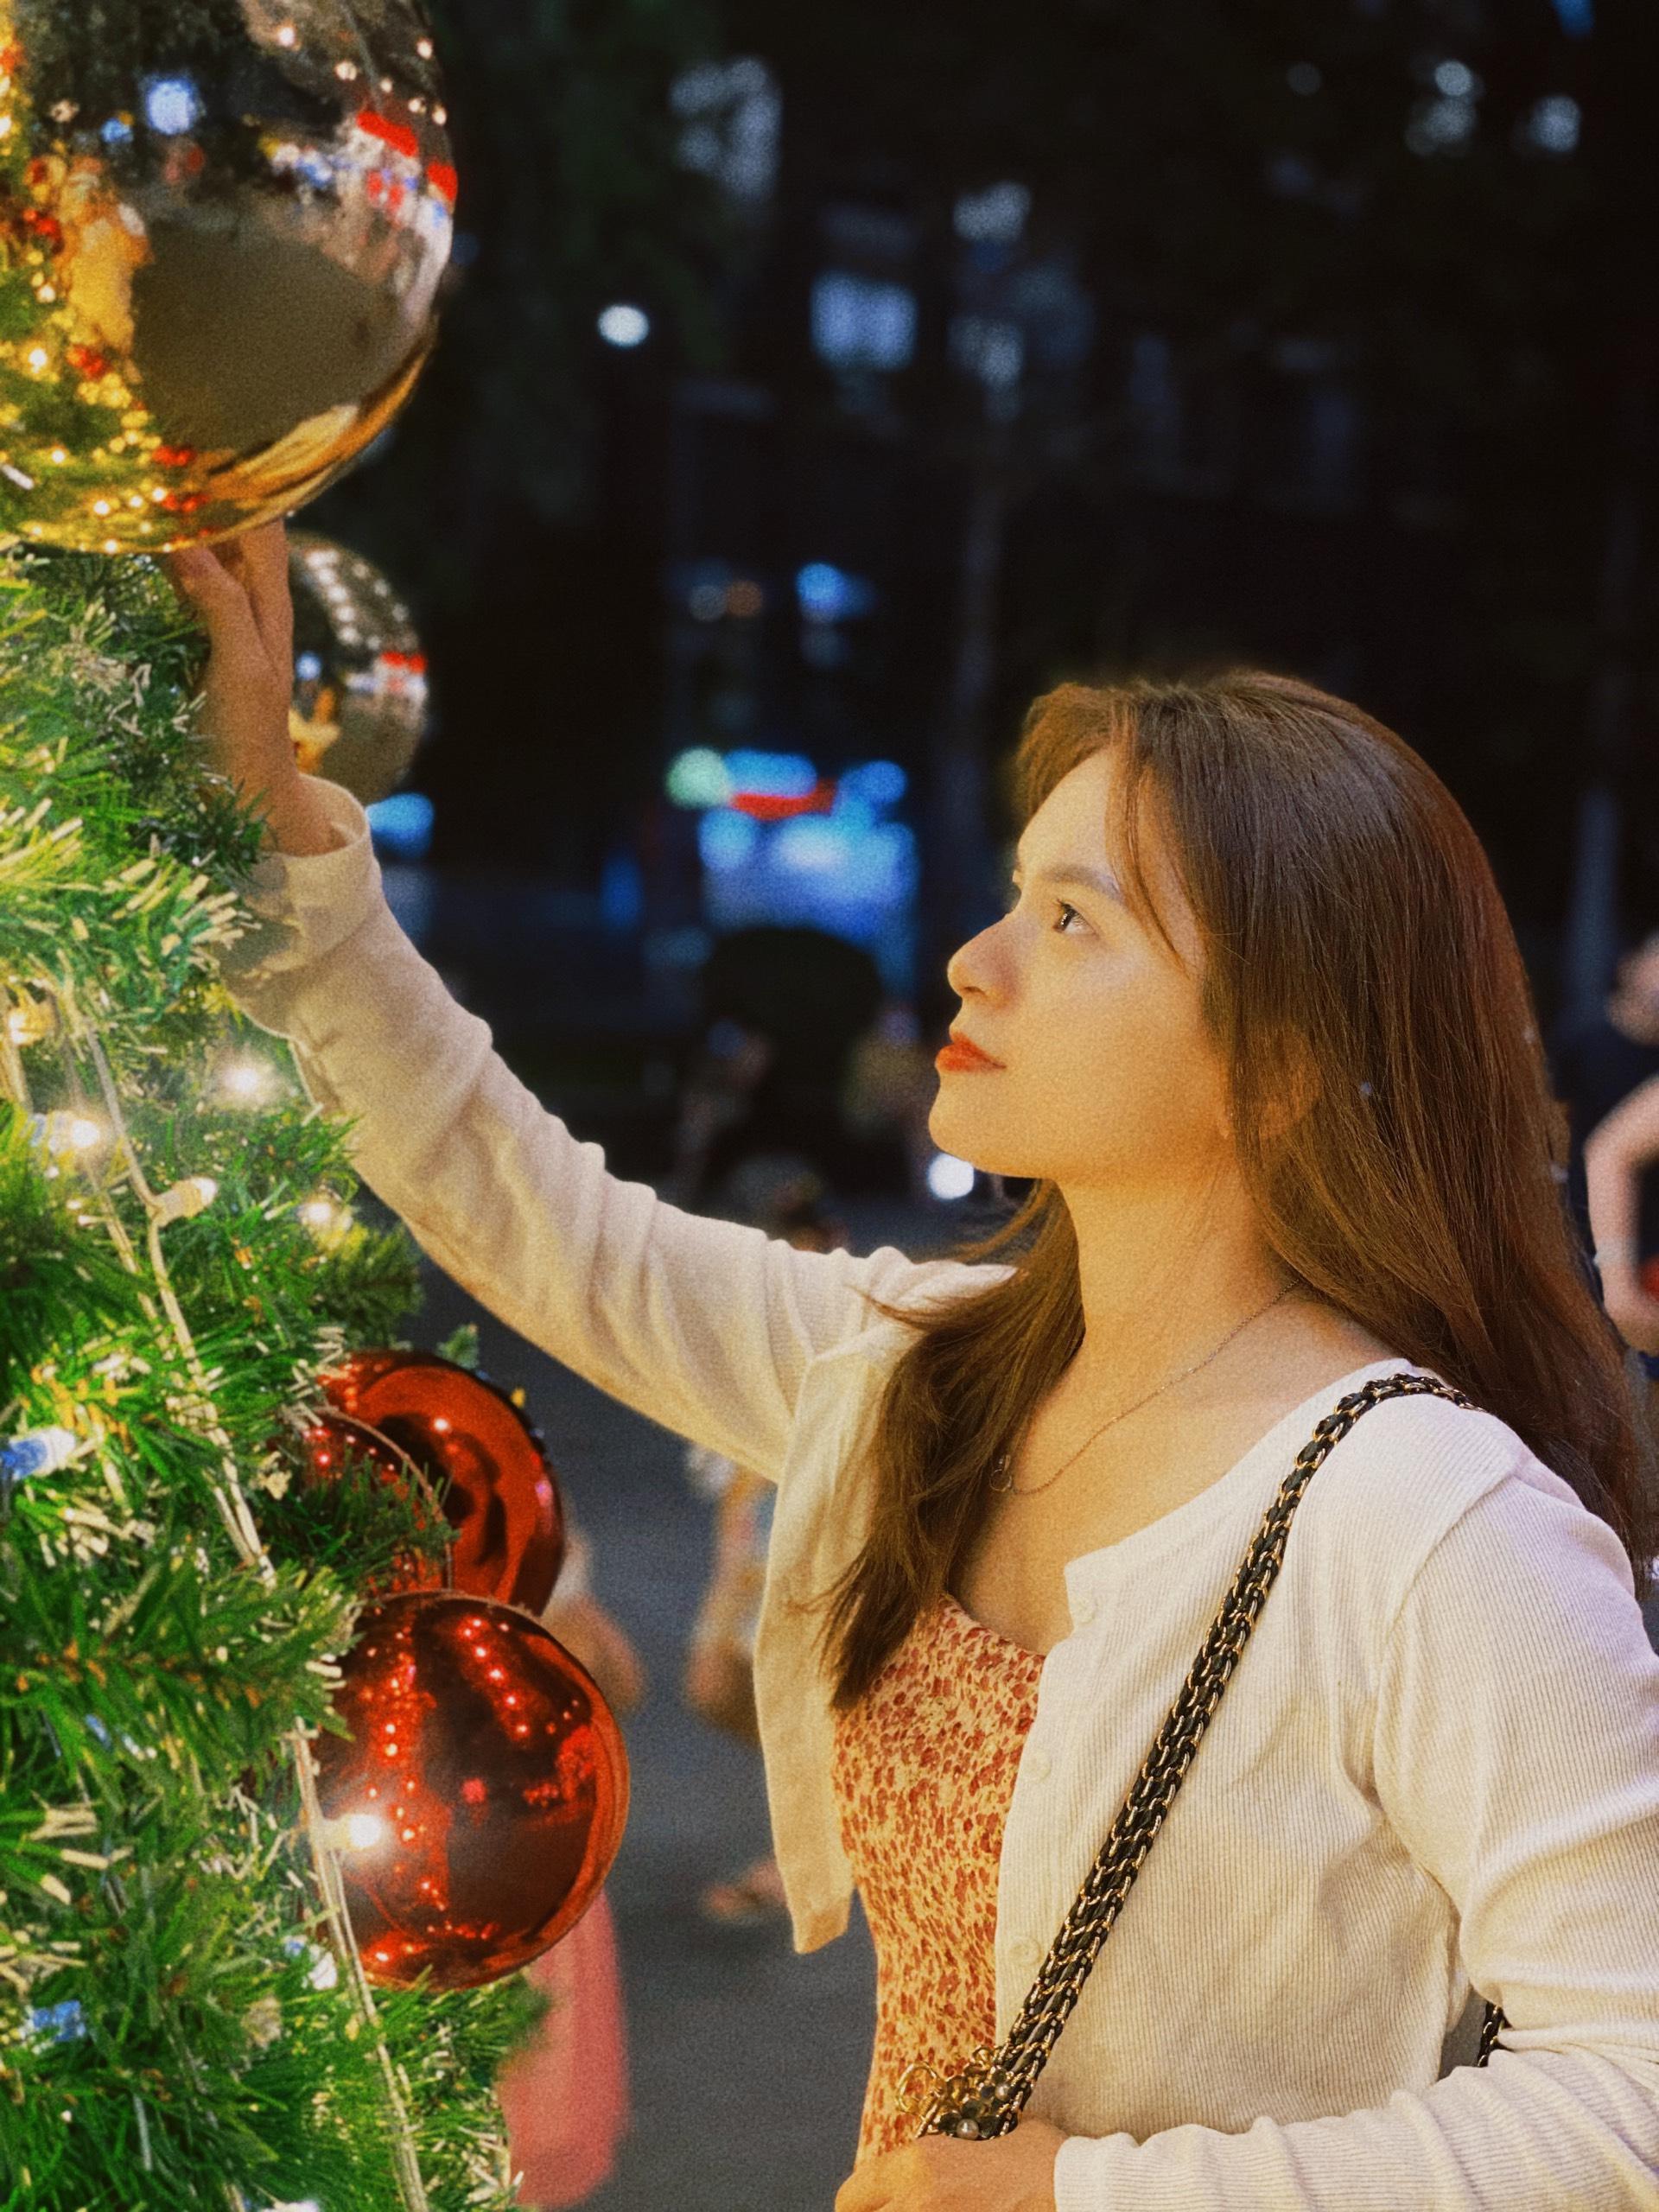 Cây thông Noel: Hãy cùng chiêm ngưỡng những cây thông Noel tráng lệ tại các trung tâm thương mại và đường phố đông đúc trong mùa lễ hội này. Với đèn LED lung linh, những cây thông Noel sẽ mang đến cho bạn và gia đình những trải nghiệm ngập tràn ánh sáng và màu sắc đầy vui tươi.